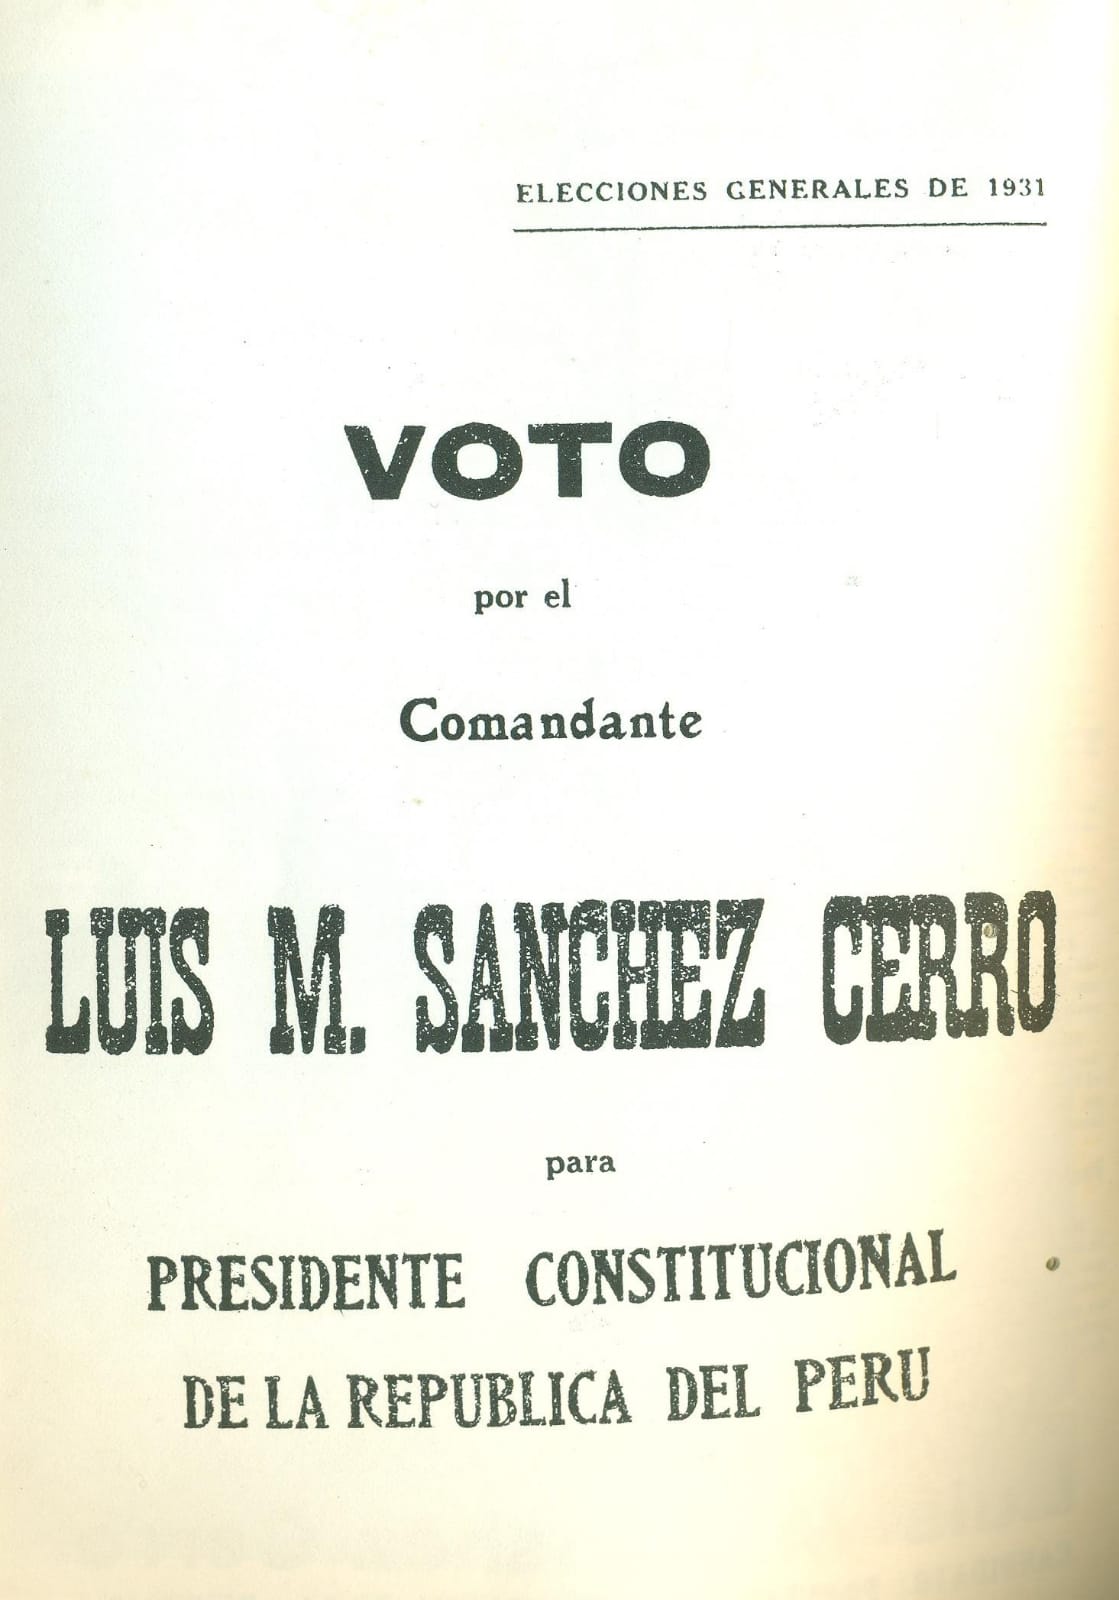 Voto de las primeras elecciones lideradas por el JNE en 1931